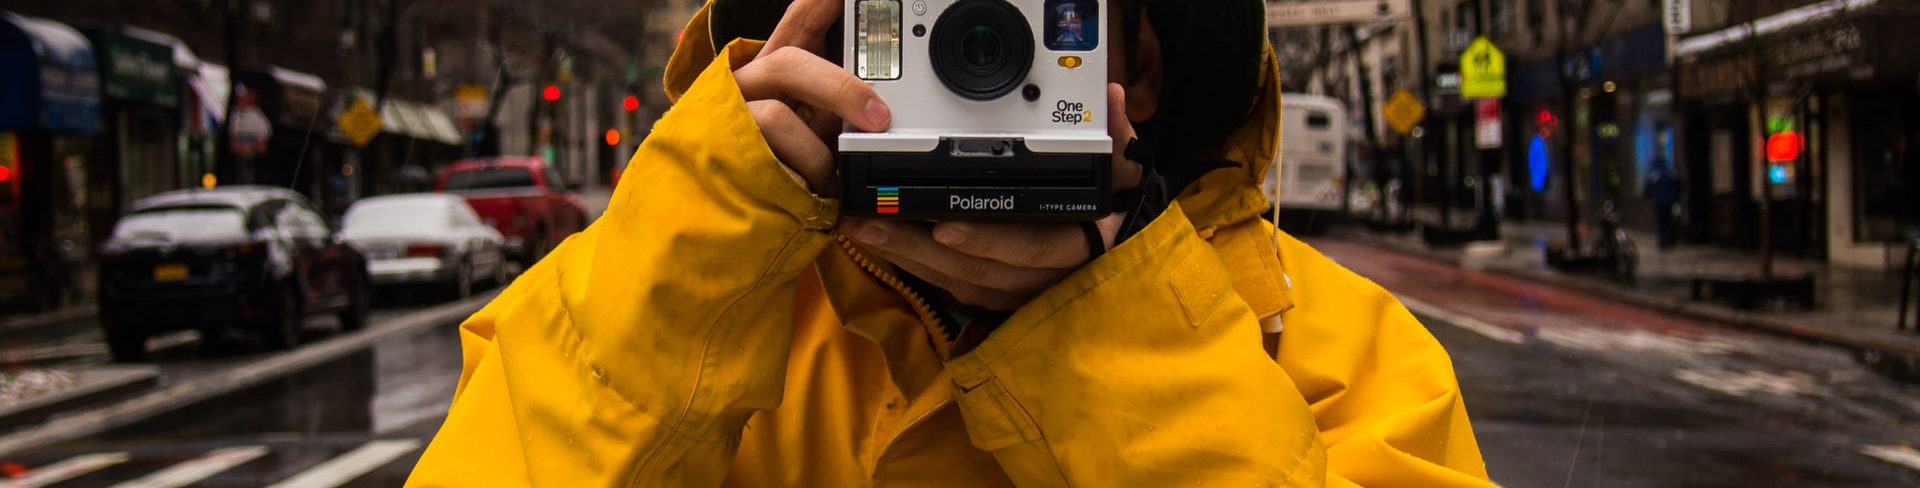 Mężczyzna w żółtej przeciwdeszczowej kurtce stoi na ulicy Nowego Jorku i trzyma aparat polaroid skierowany w stronę osoby robiącej zdjęcie.